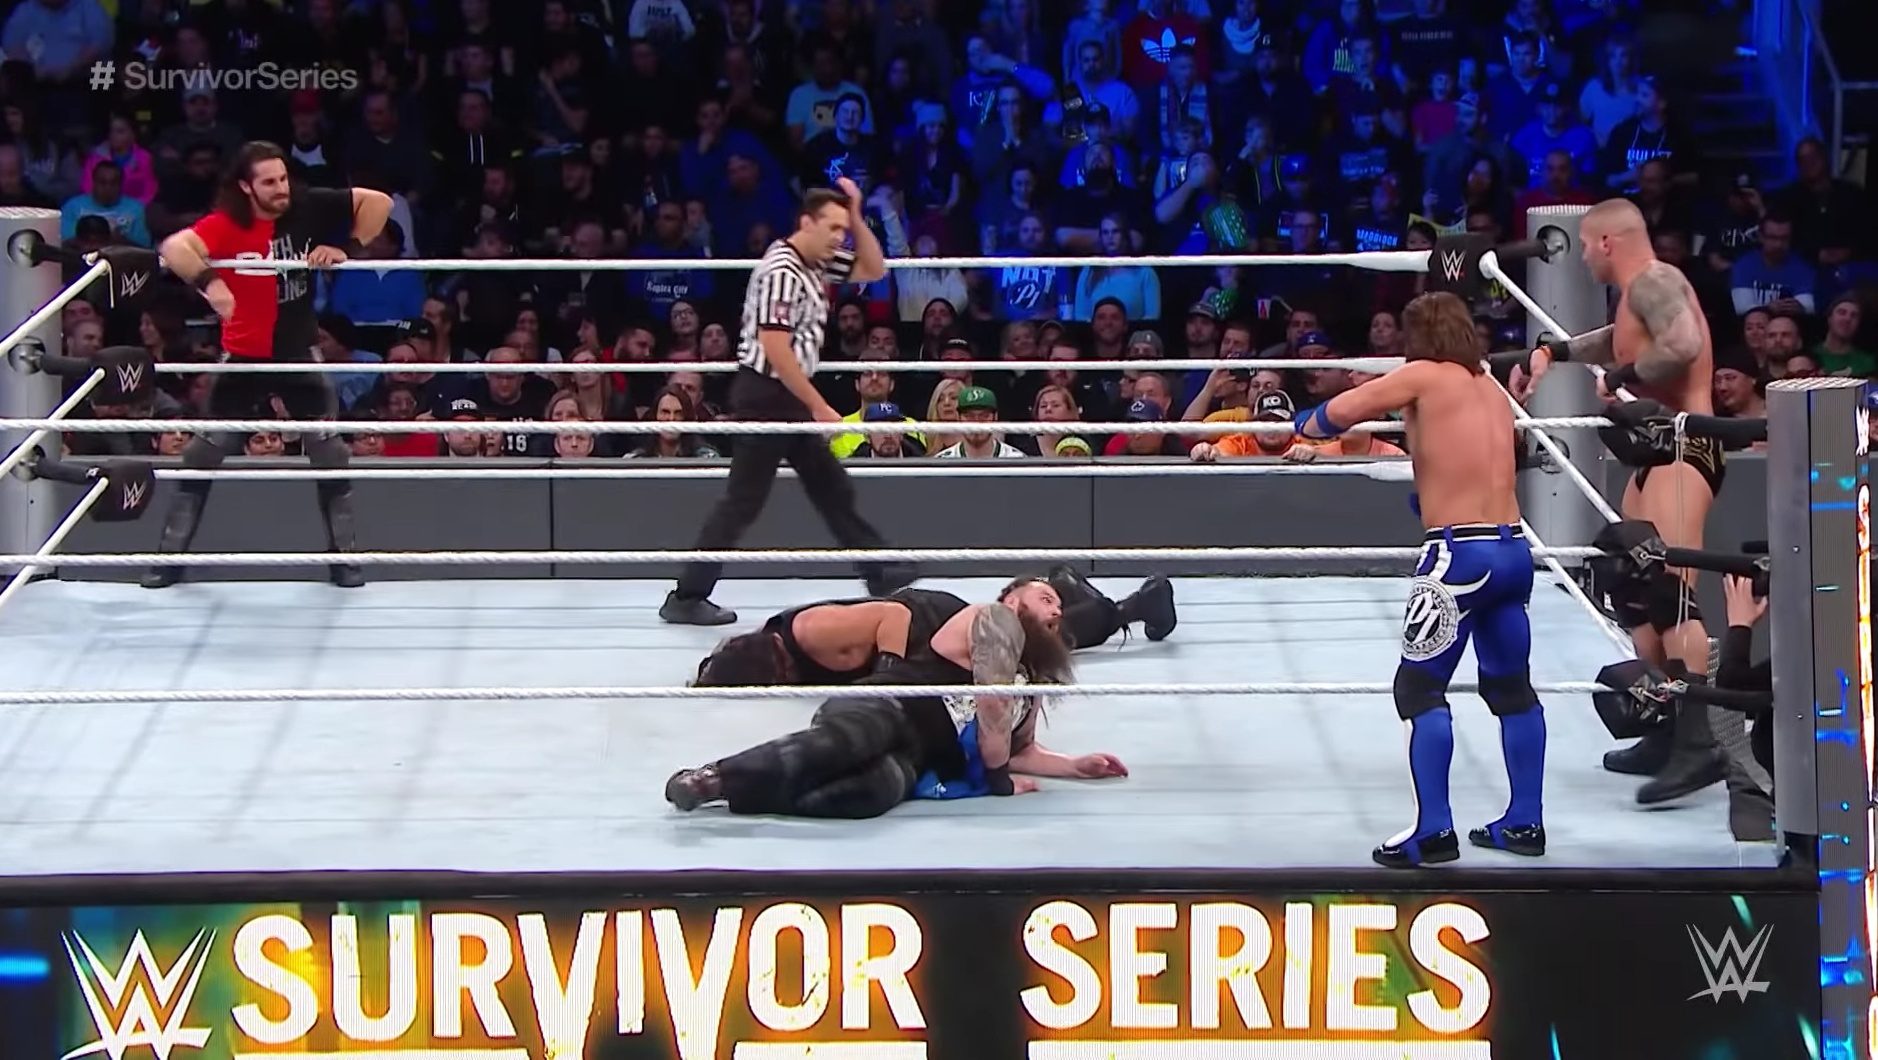 WWE Survivor Series 2021 Matches